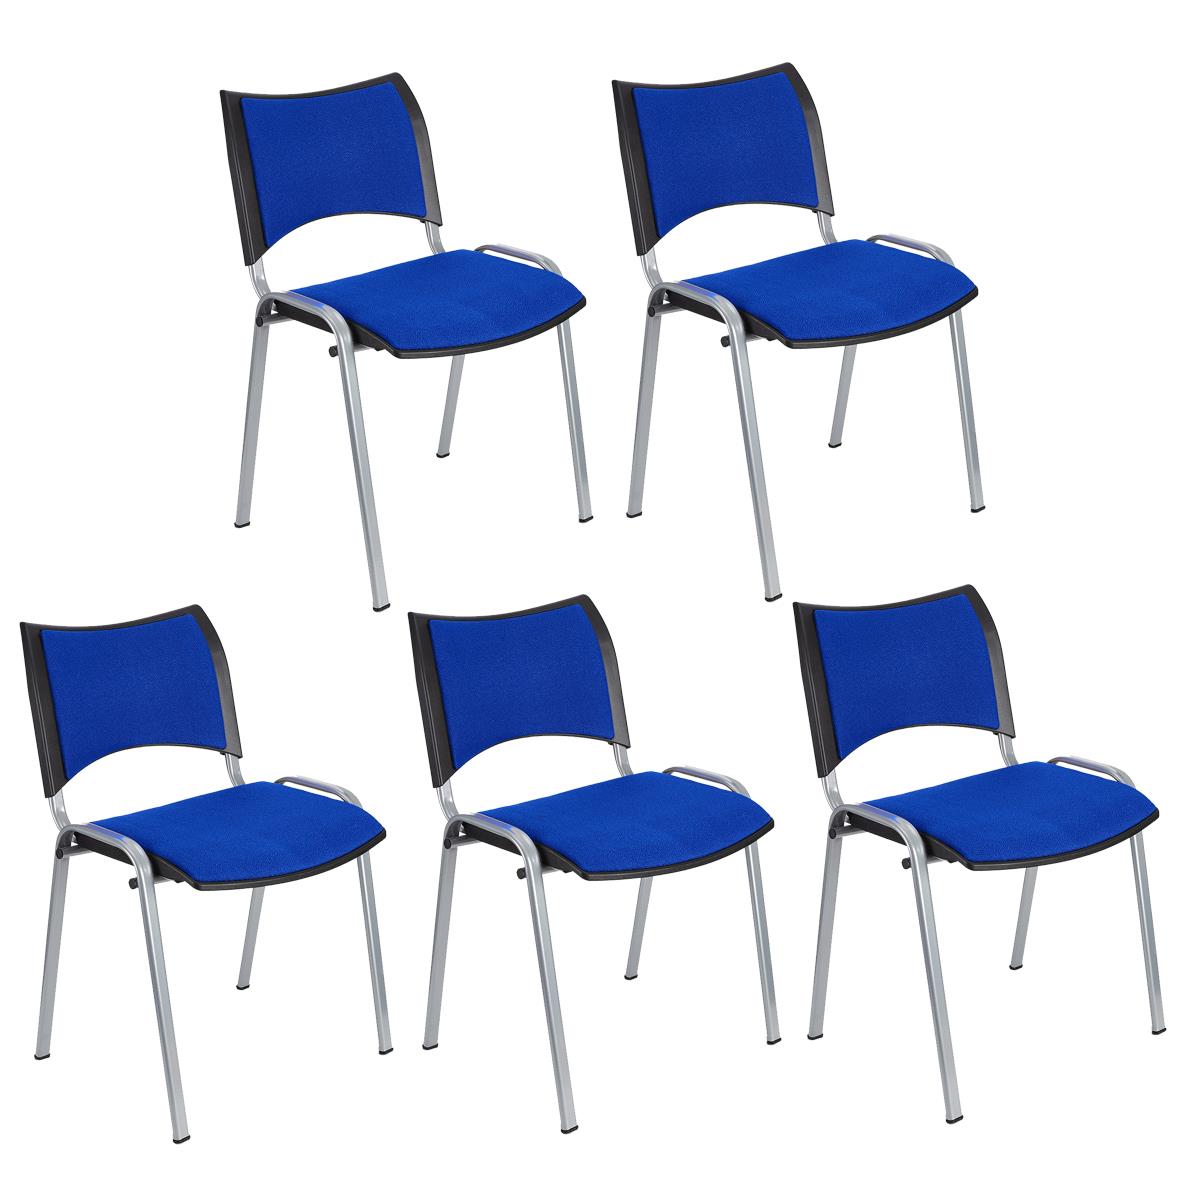 Lote 5 Cadeiras de Visita ROMEL, Prática e Empilhável, Pernas Cinza, Em Pano, Azul